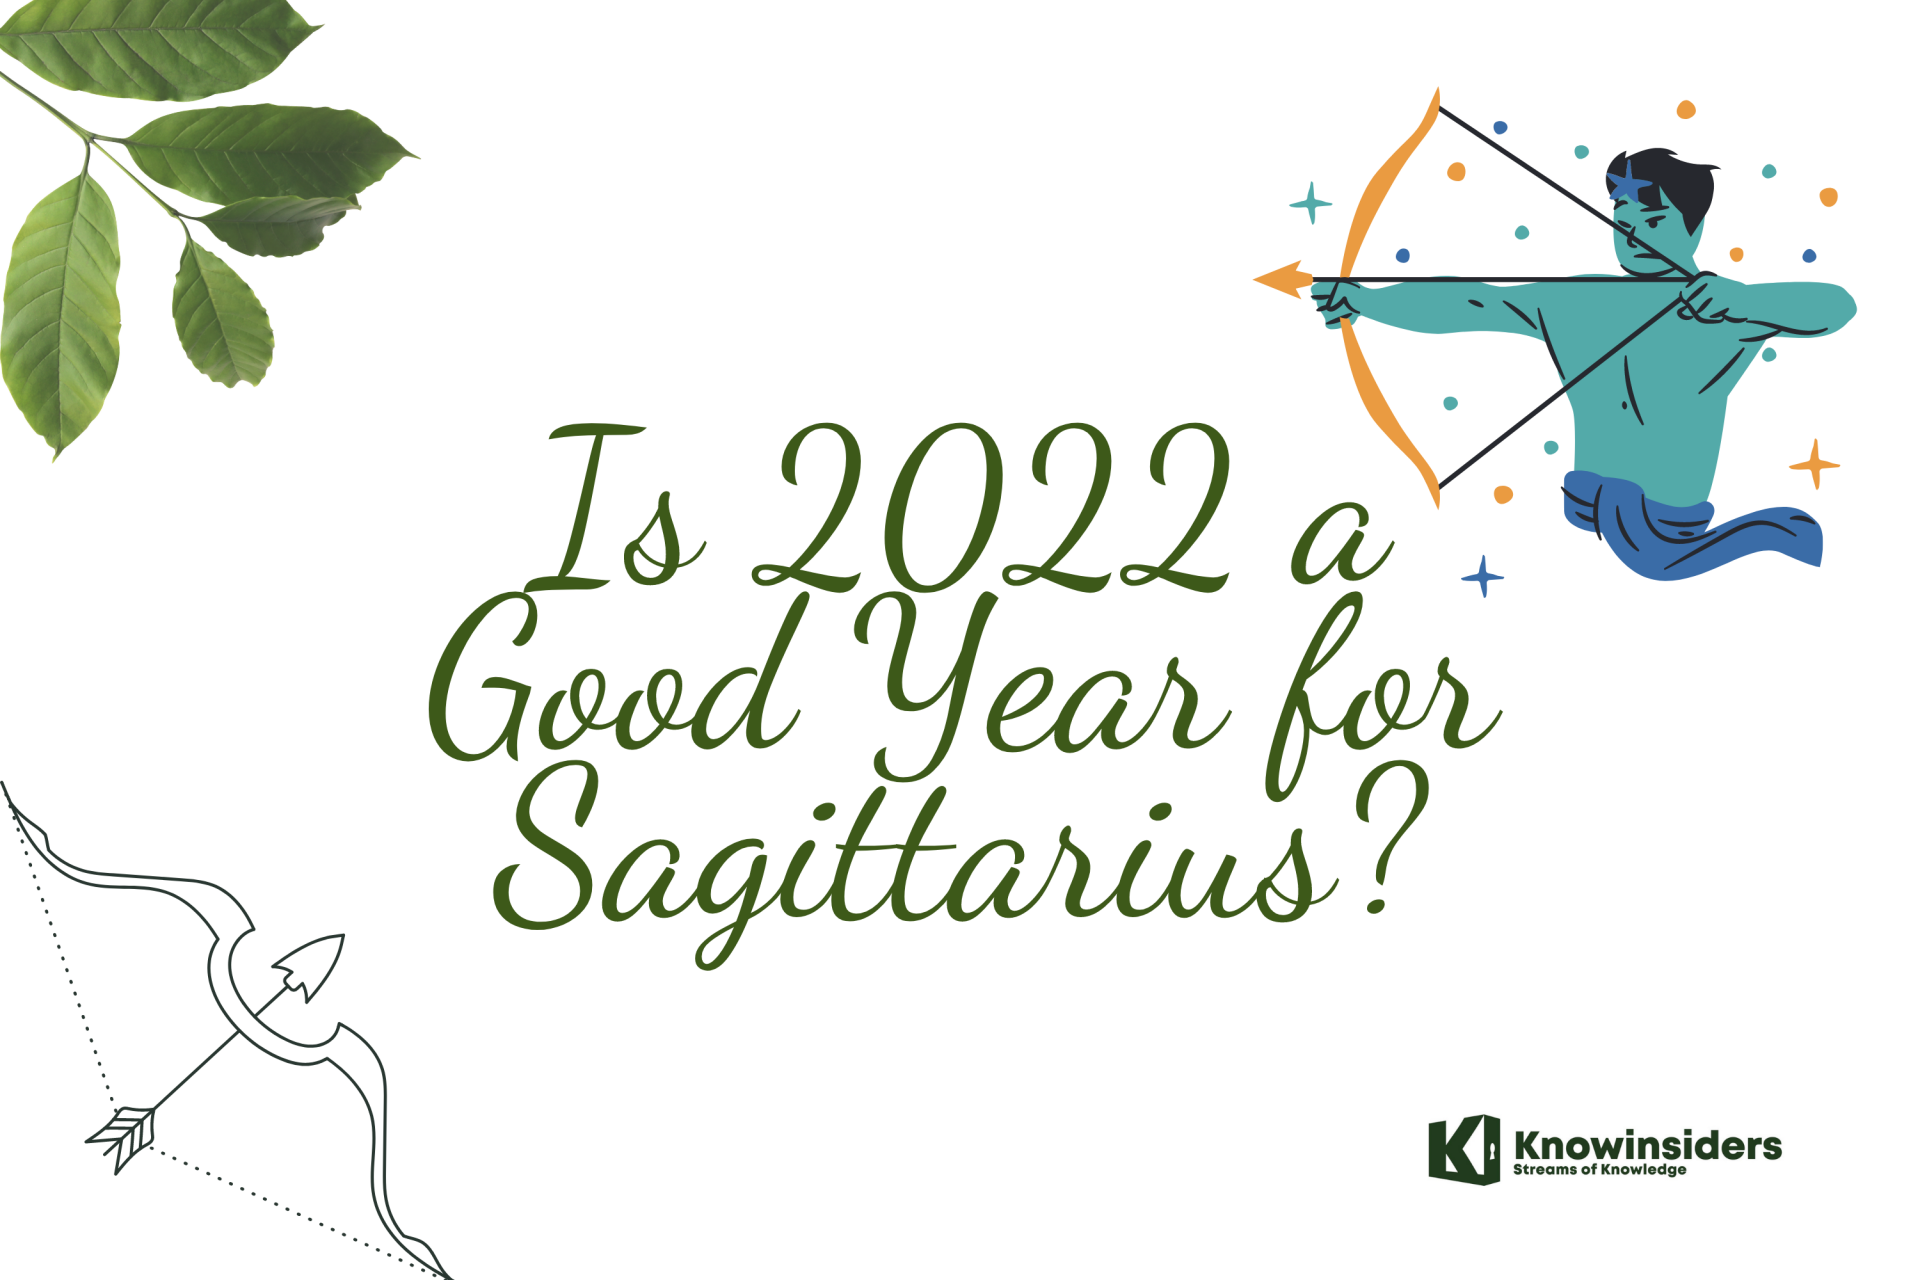 Sagittarius 2022. Photo: KnowInsiders